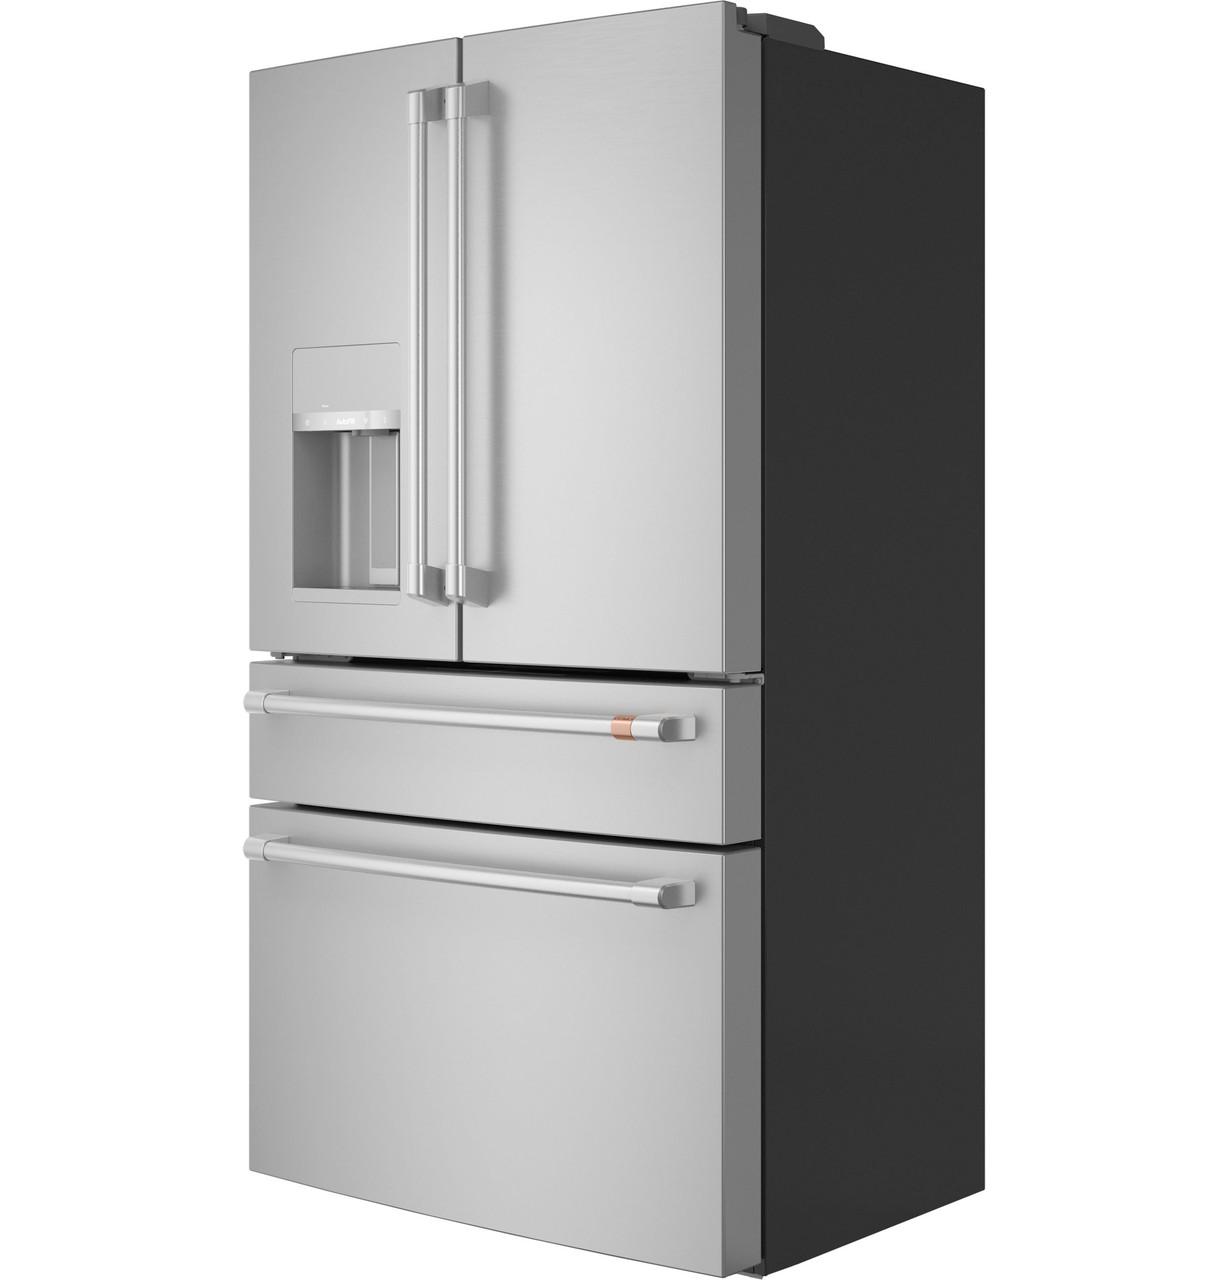 Cafe CXE22DP2PS1 Café&#8482; Energy Star® 22.3 Cu. Ft. Smart Counter-Depth 4-Door French-Door Refrigerator